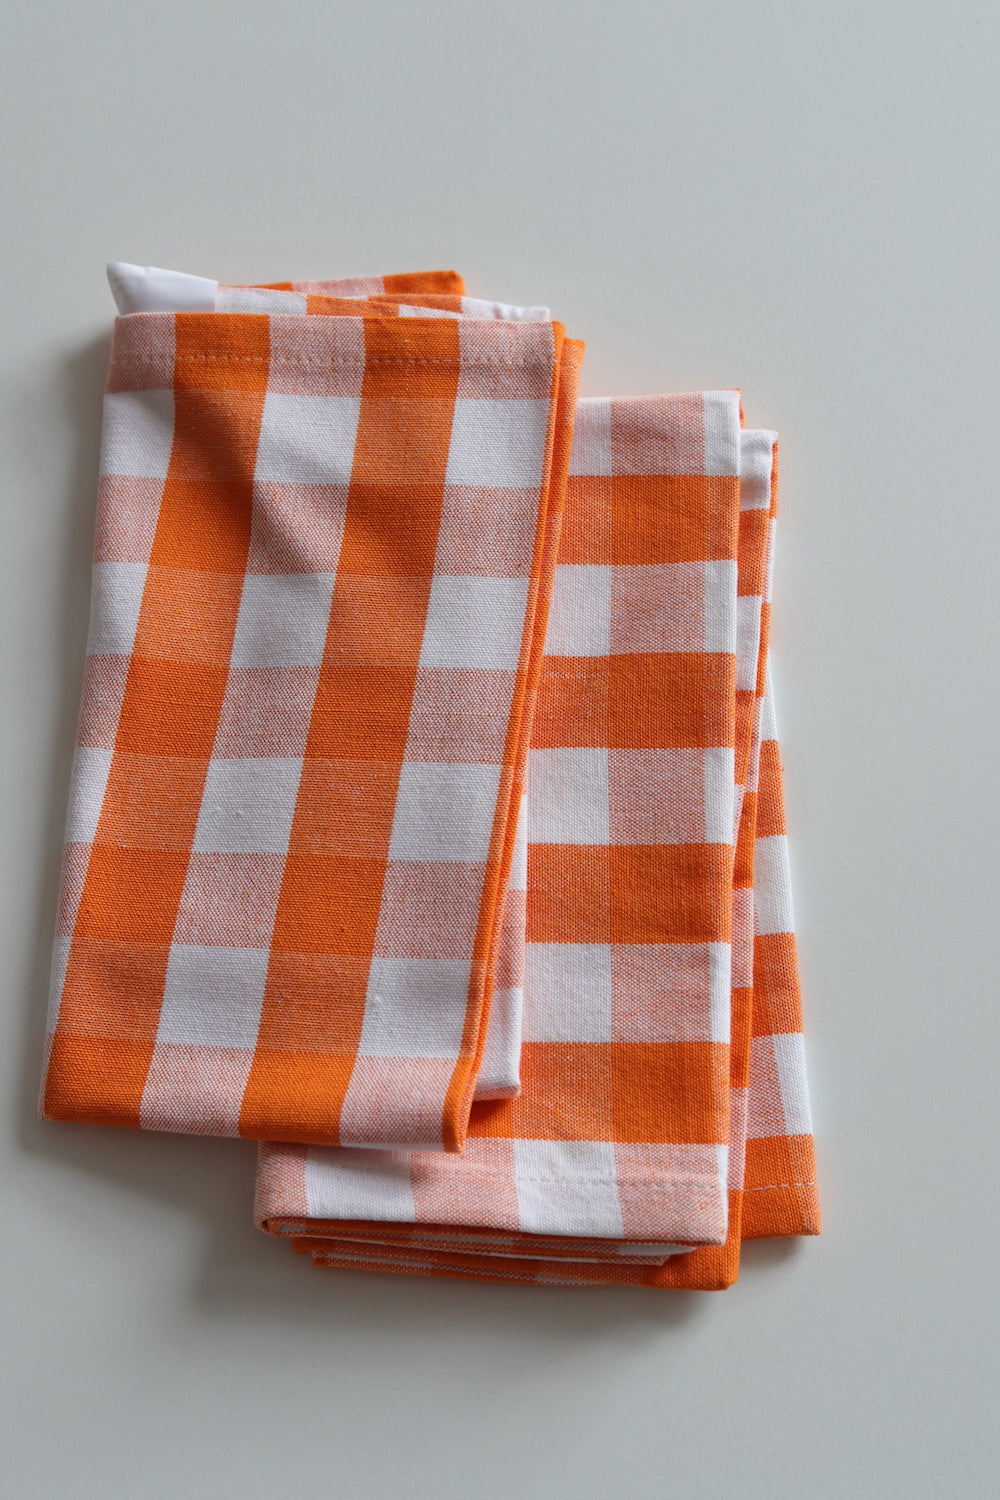 Two orange and white checked napkins